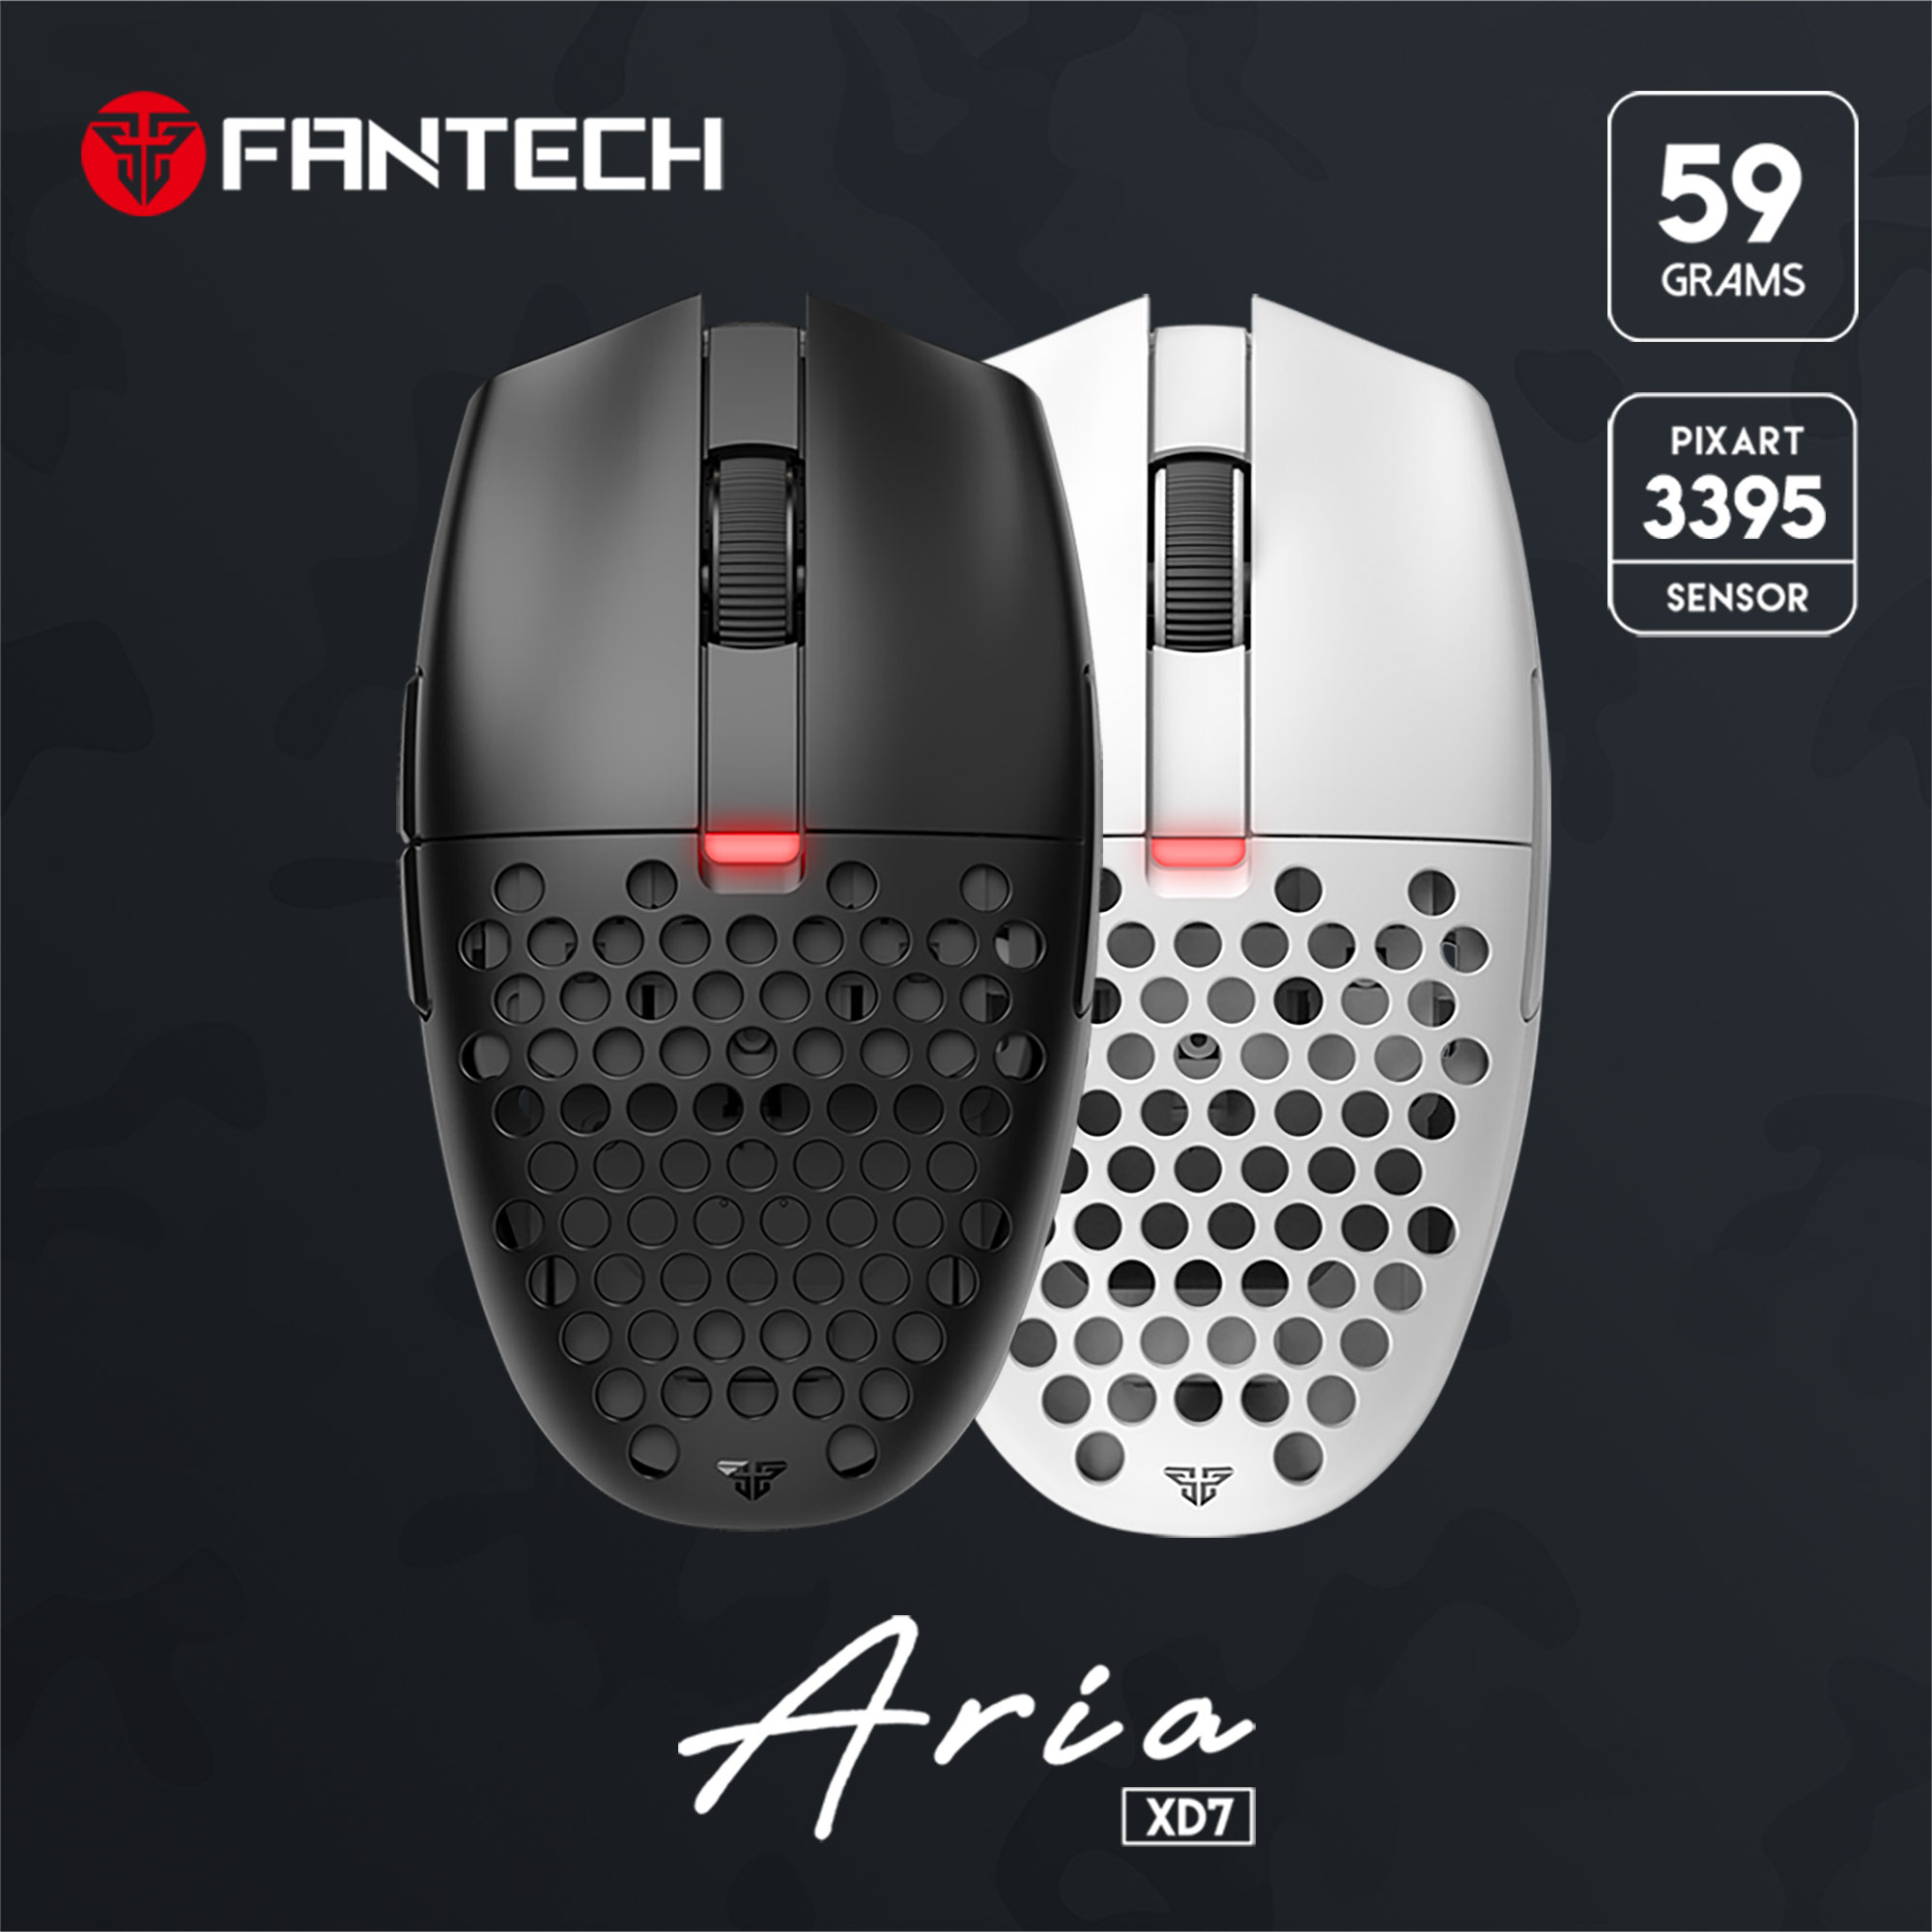 Aria XD7 - Fantech - ワイヤレスゲーミングマウス - 株式会社アーキサイト